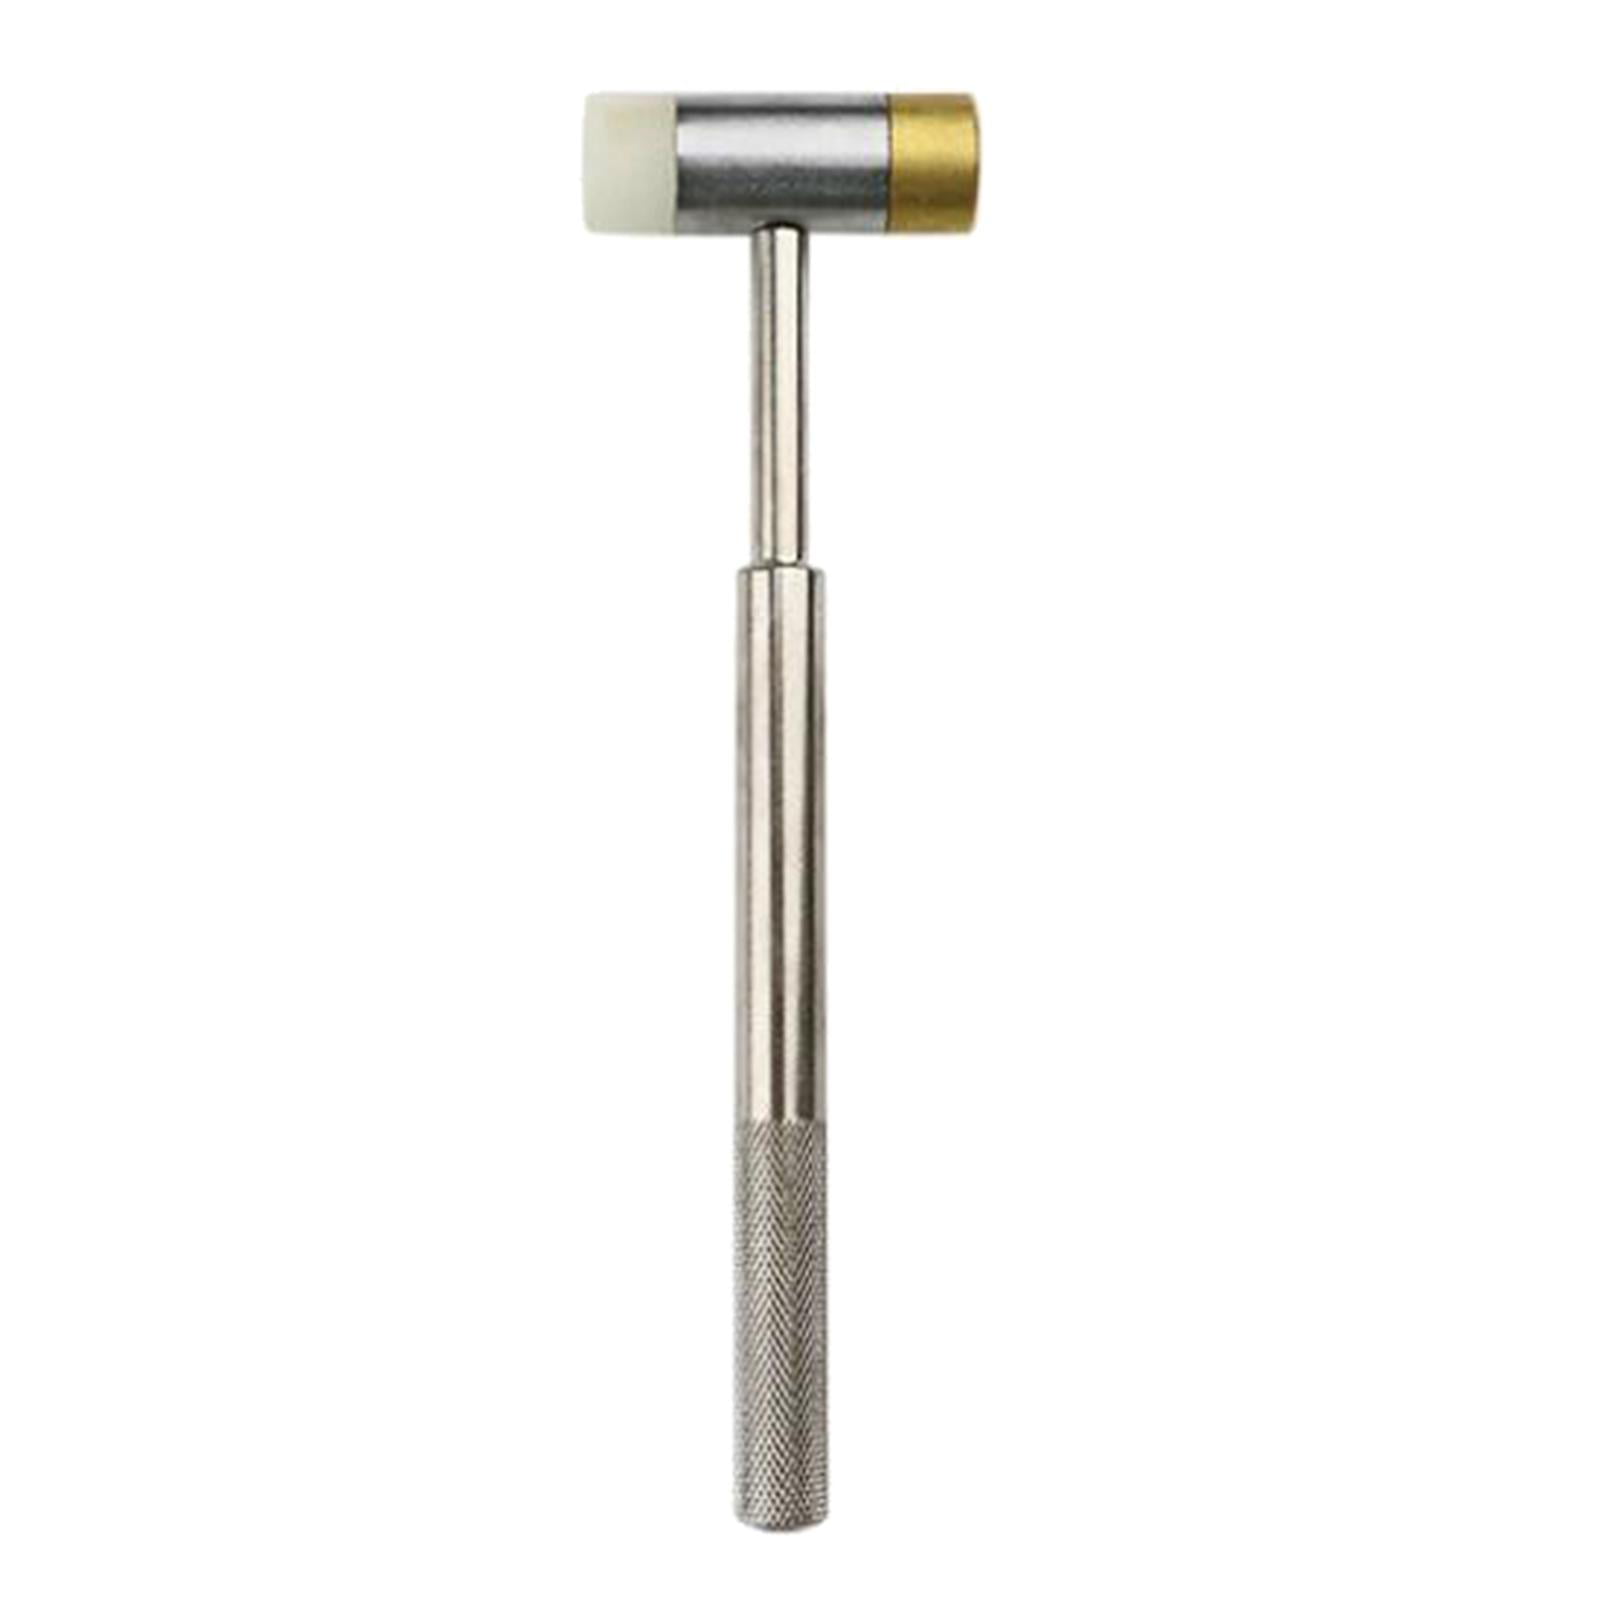 Roll Pin Punch Set Double-Faced Hammer Brass Steel Gunsmith  Drift Pin Punch Set 